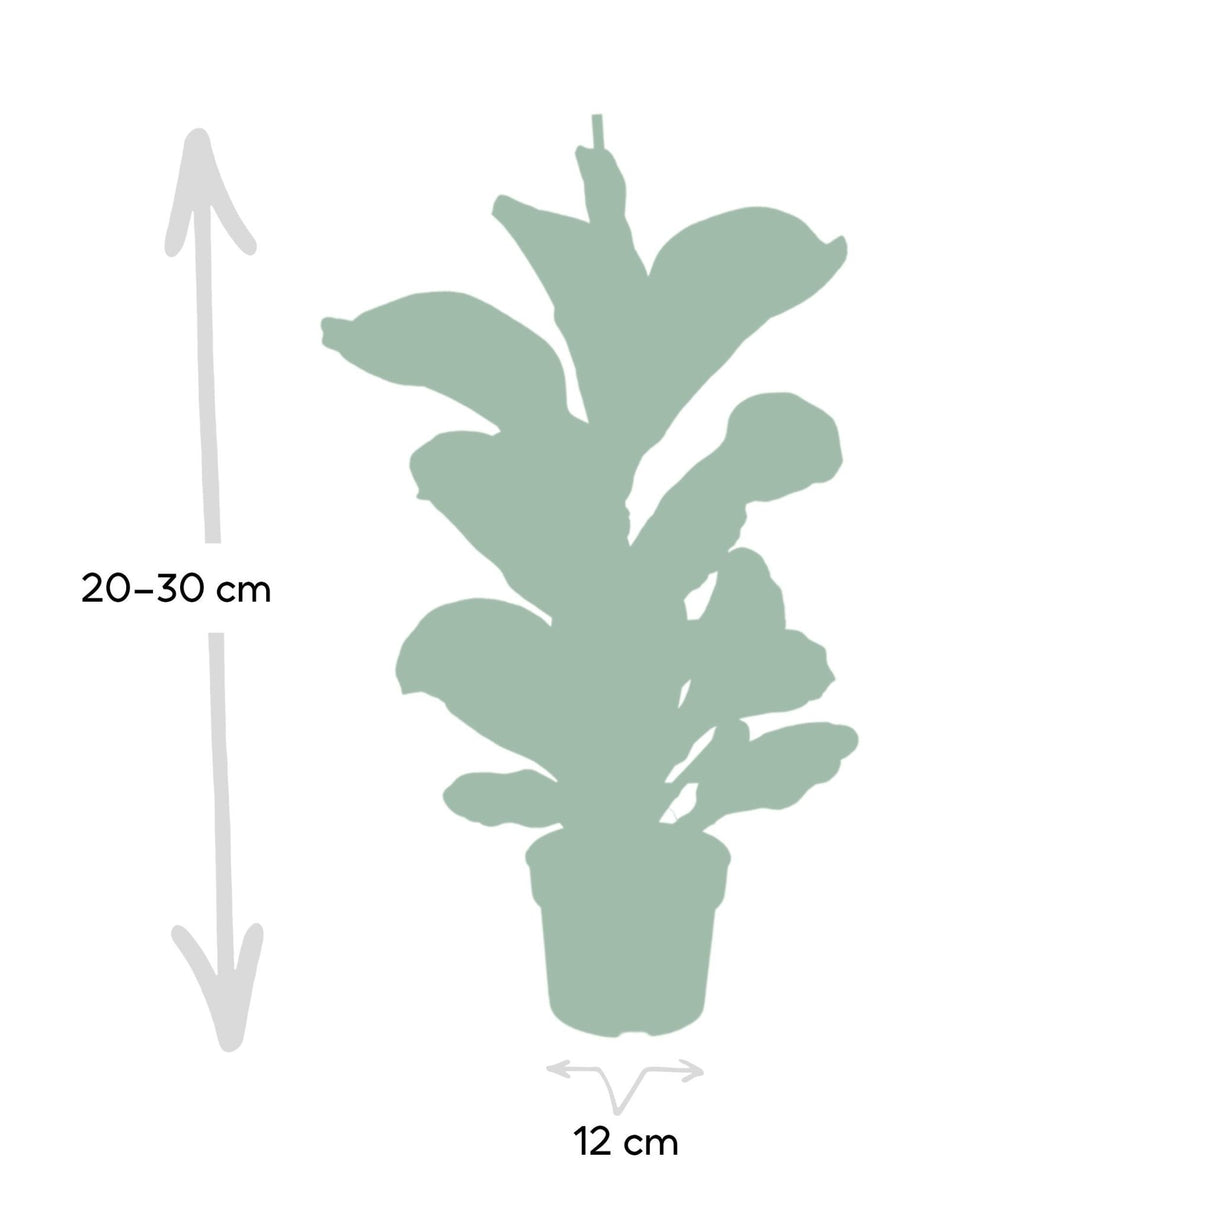 Livraison plante - Ficus lyrata bambino - h30cm, Ø12cm - plante d'intérieur